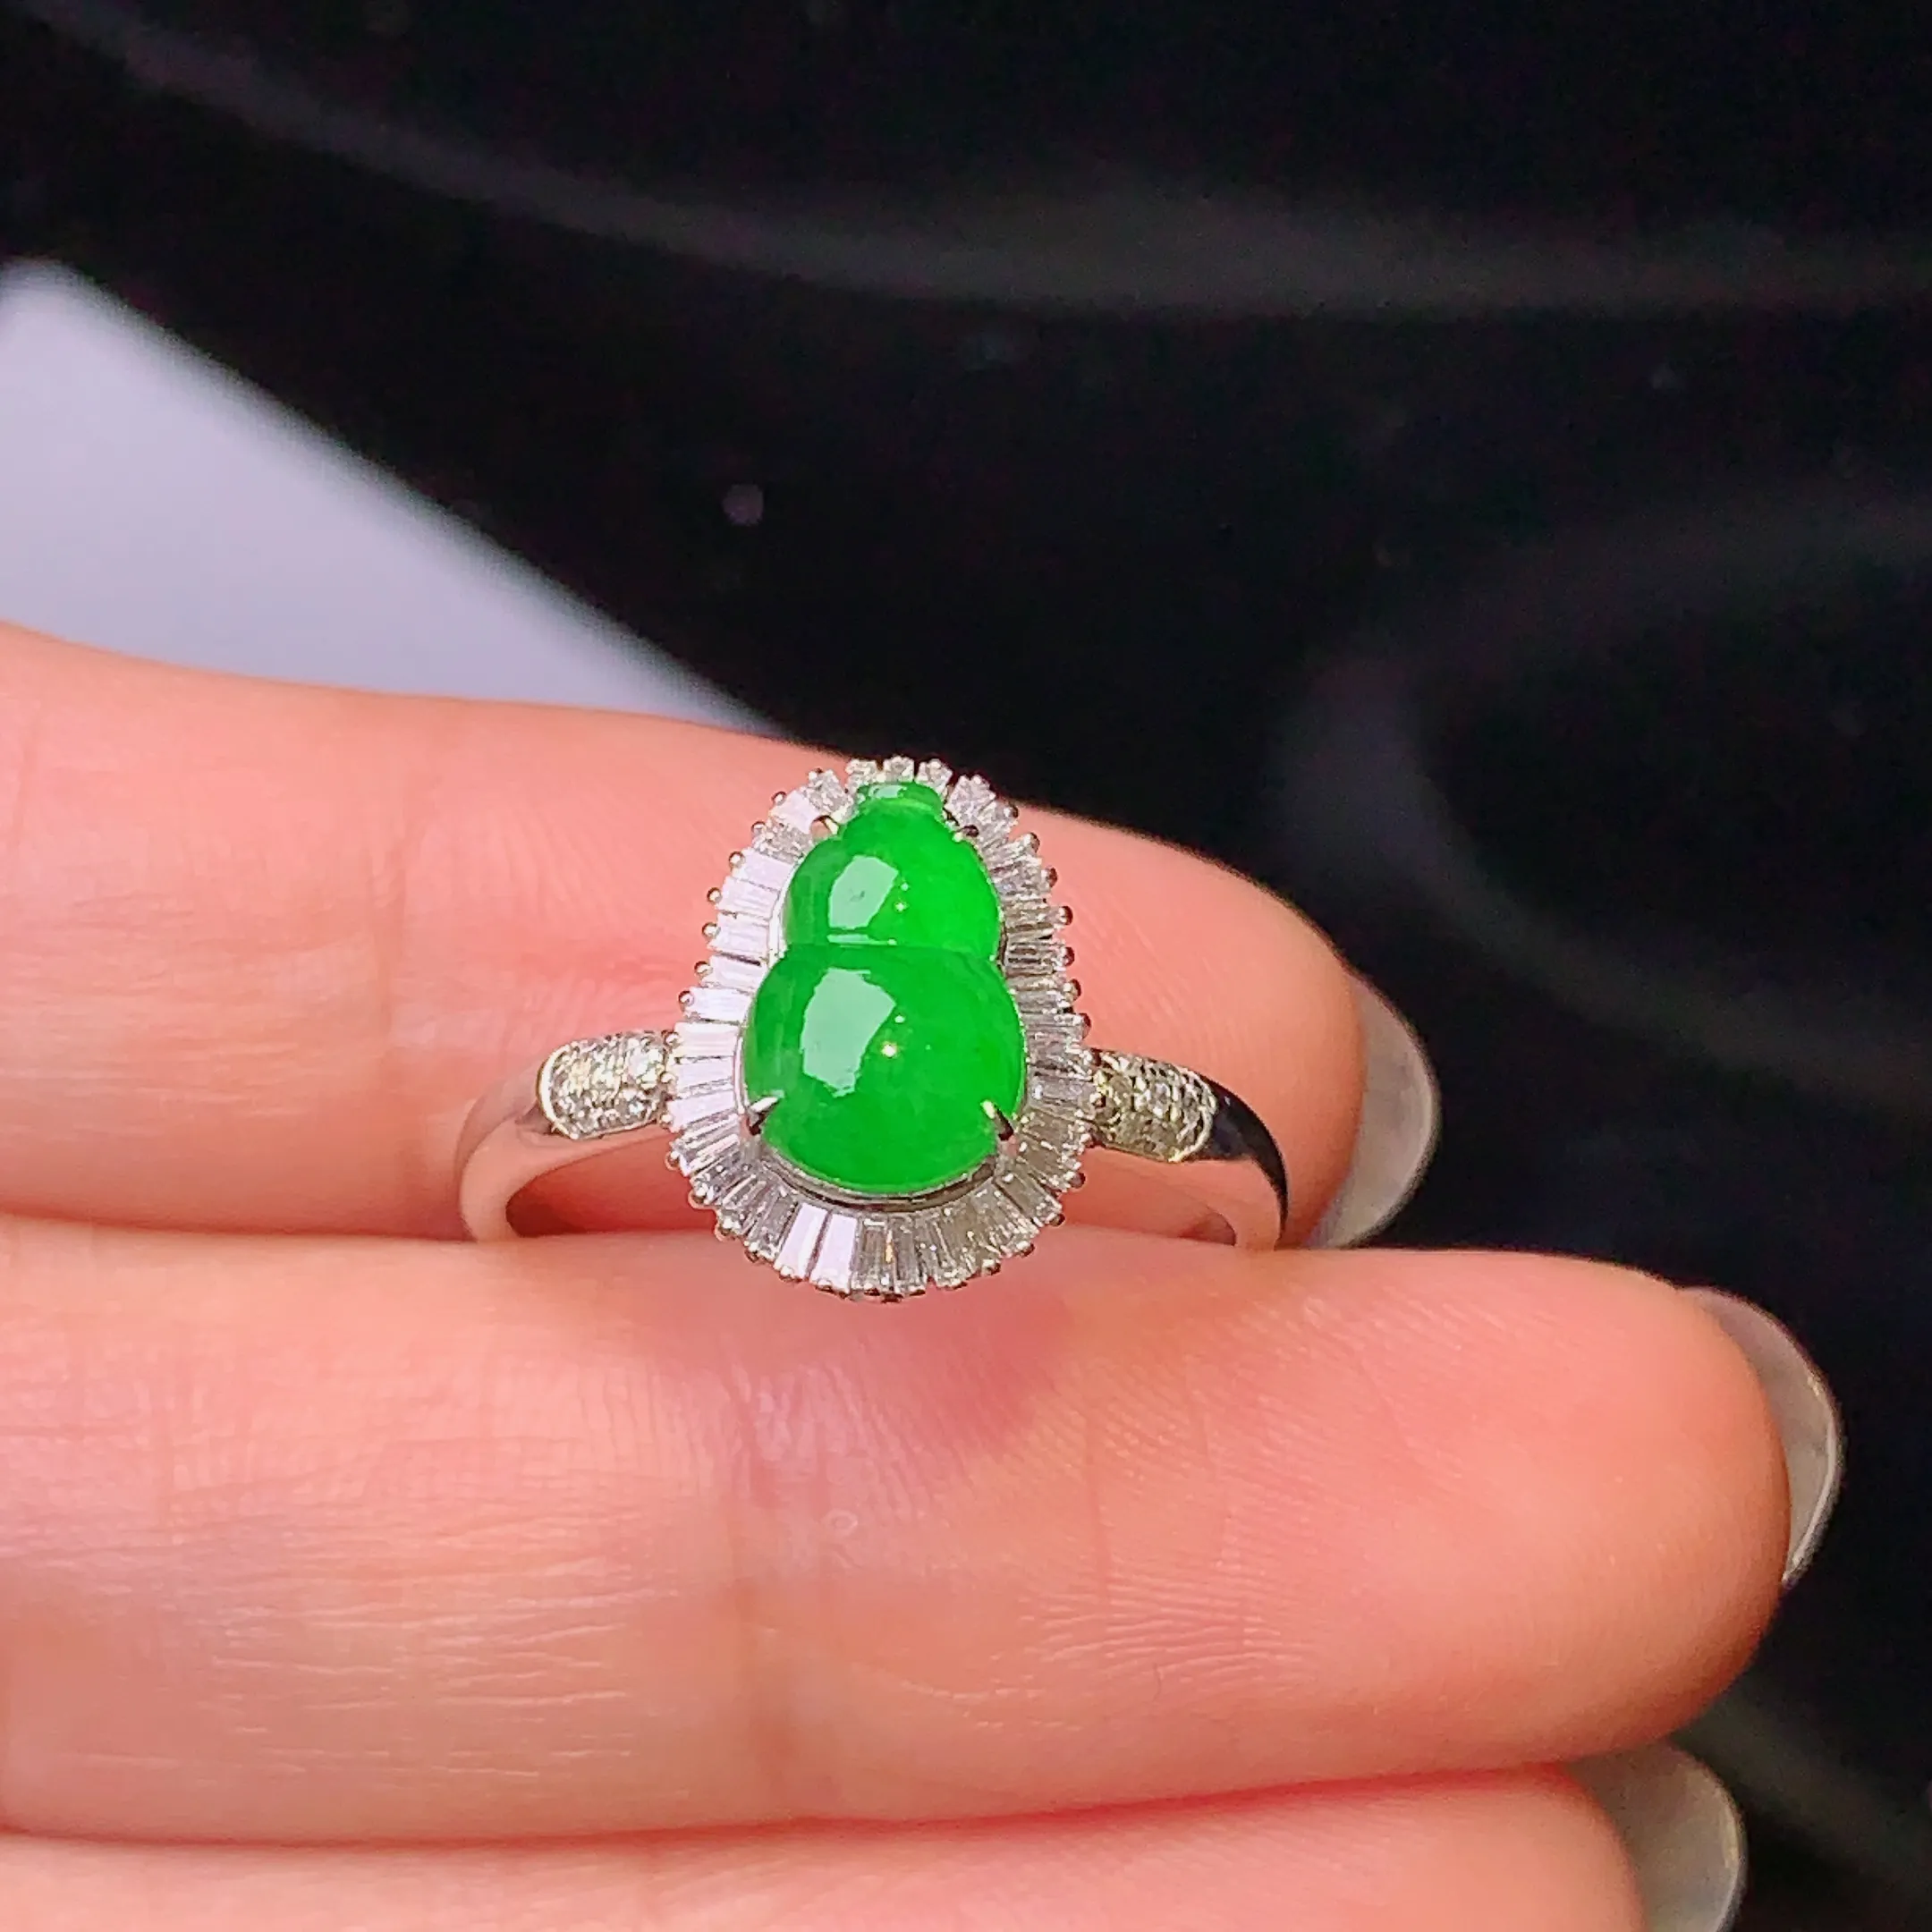 18k金钻镶嵌满绿葫芦戒指 玉质细腻 色泽艳丽 款式新颖时尚唯美 圈口14 整体尺寸12.3*9.6